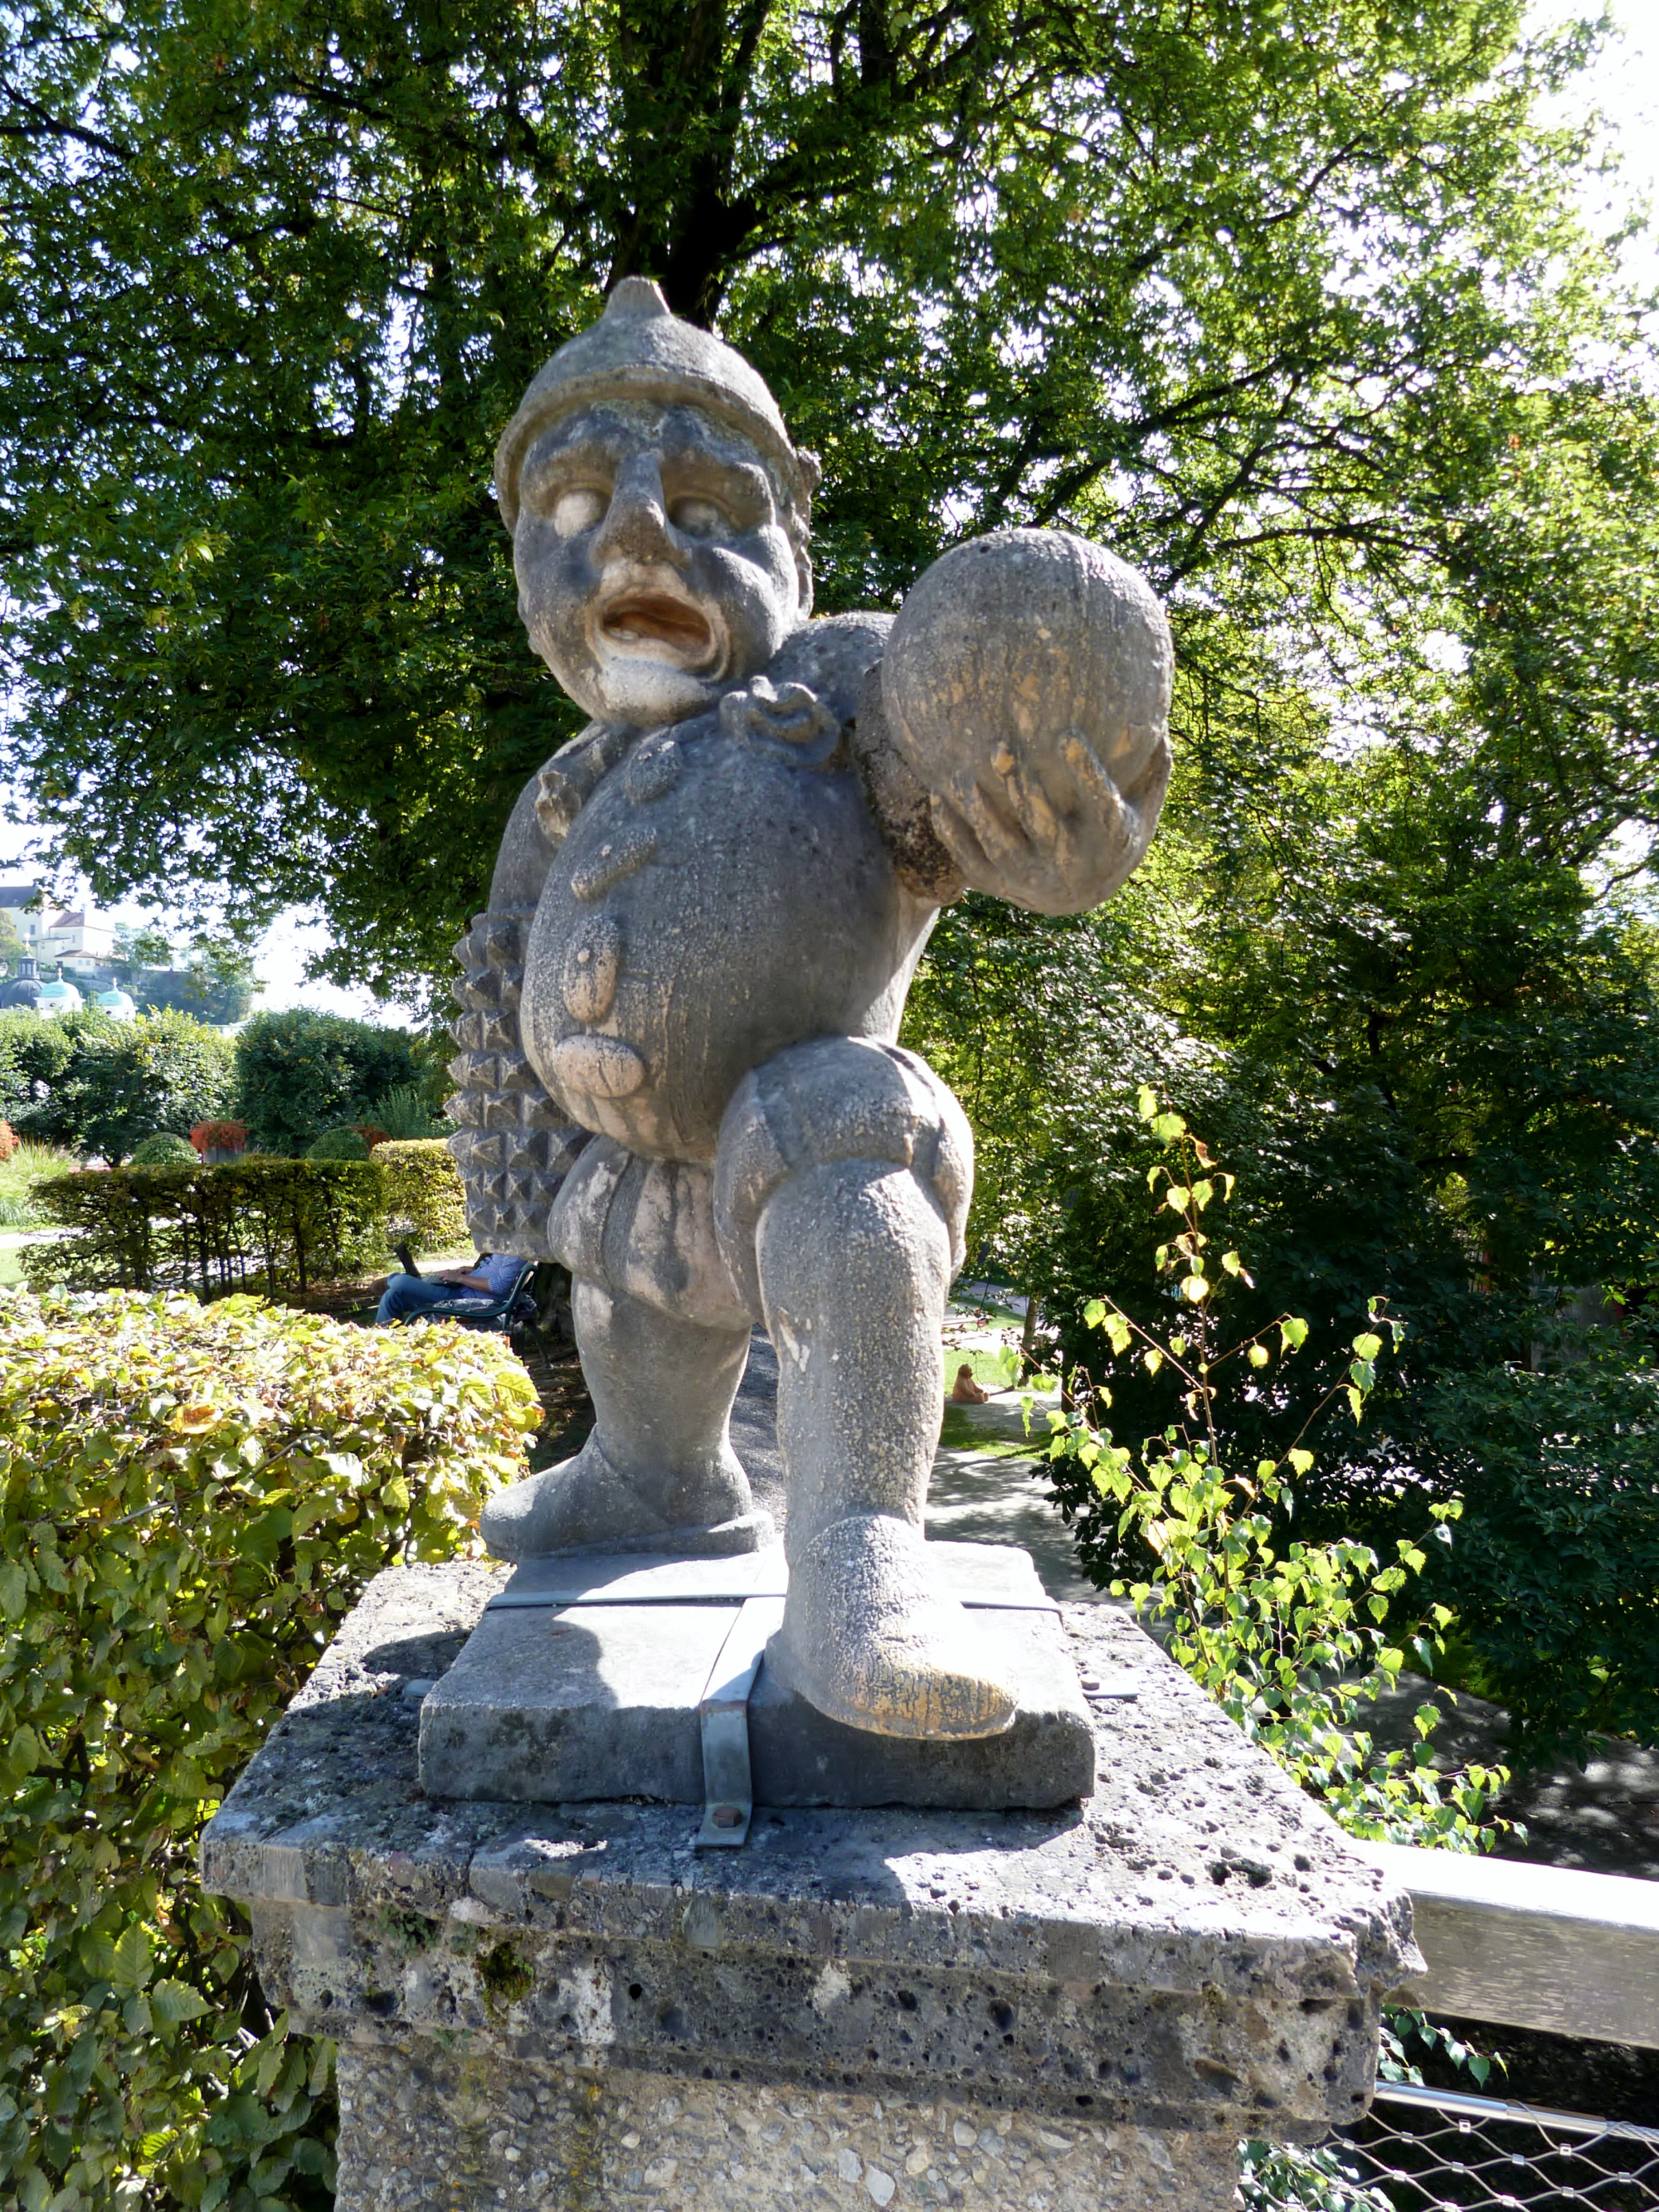 Zwergelgarten Dwarf Statue